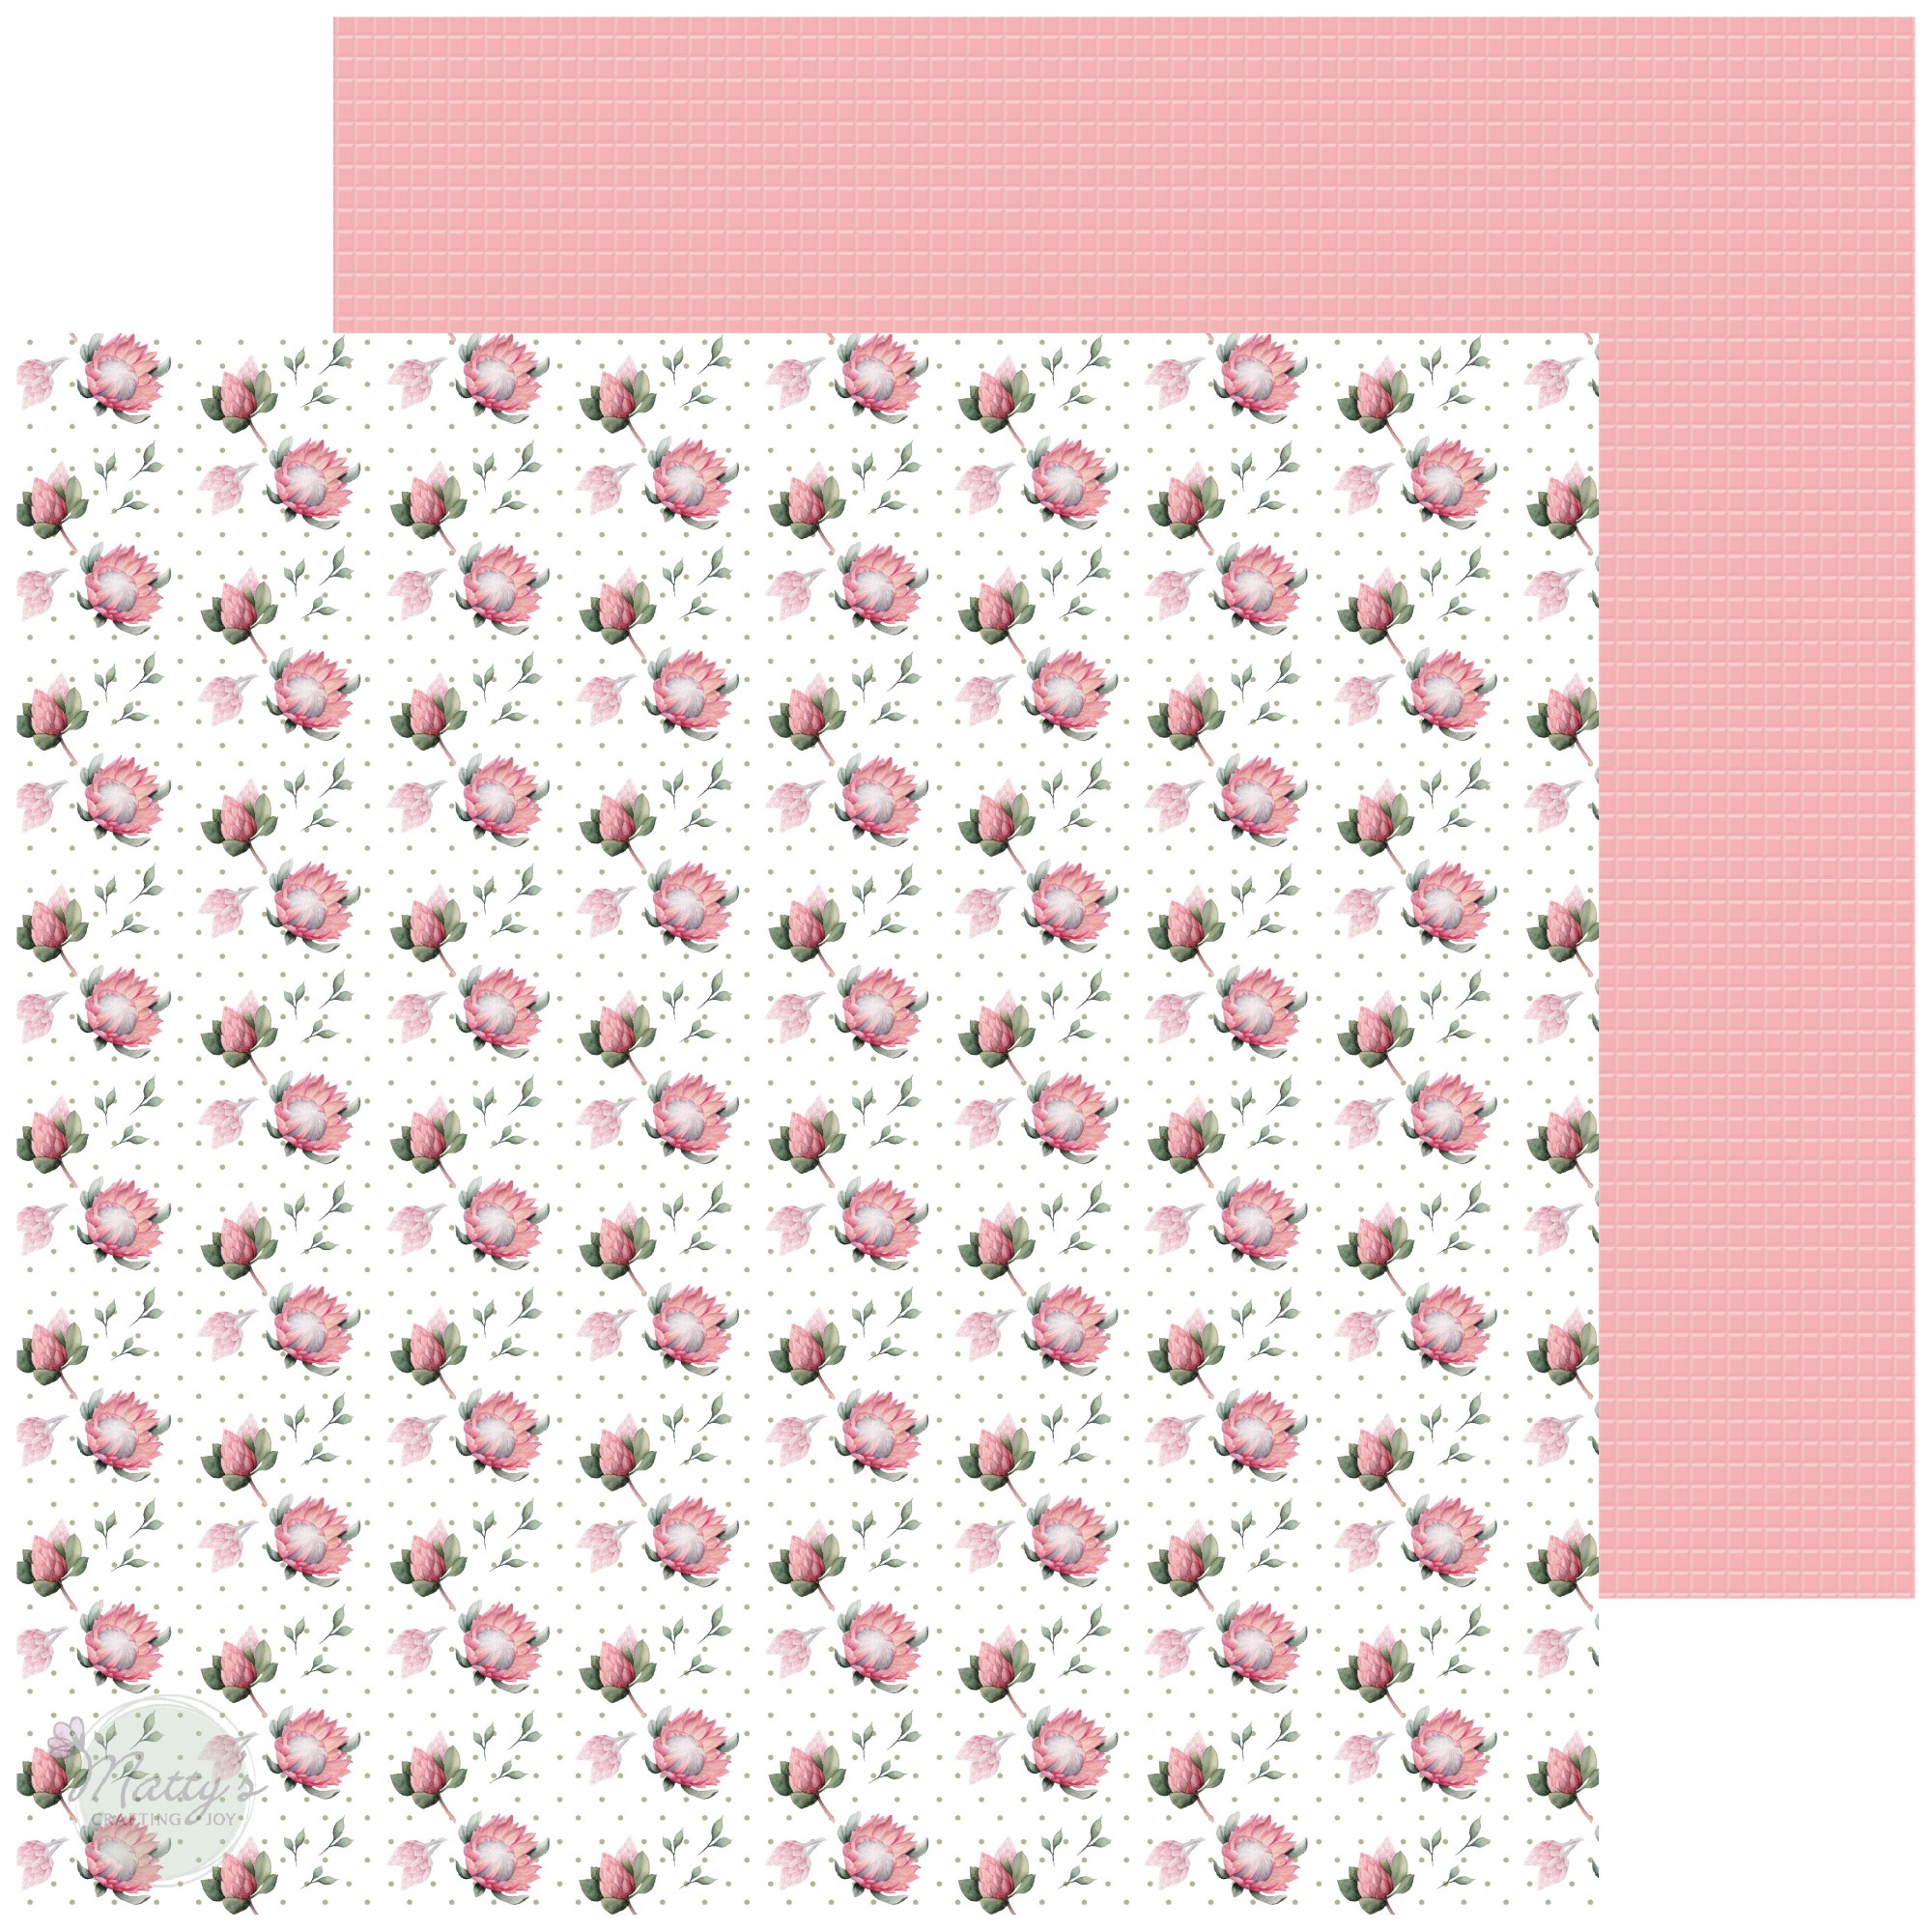 JOYCHOIC Flower Cutout Lace Scrapbook Paper for Scrapbooking, 4